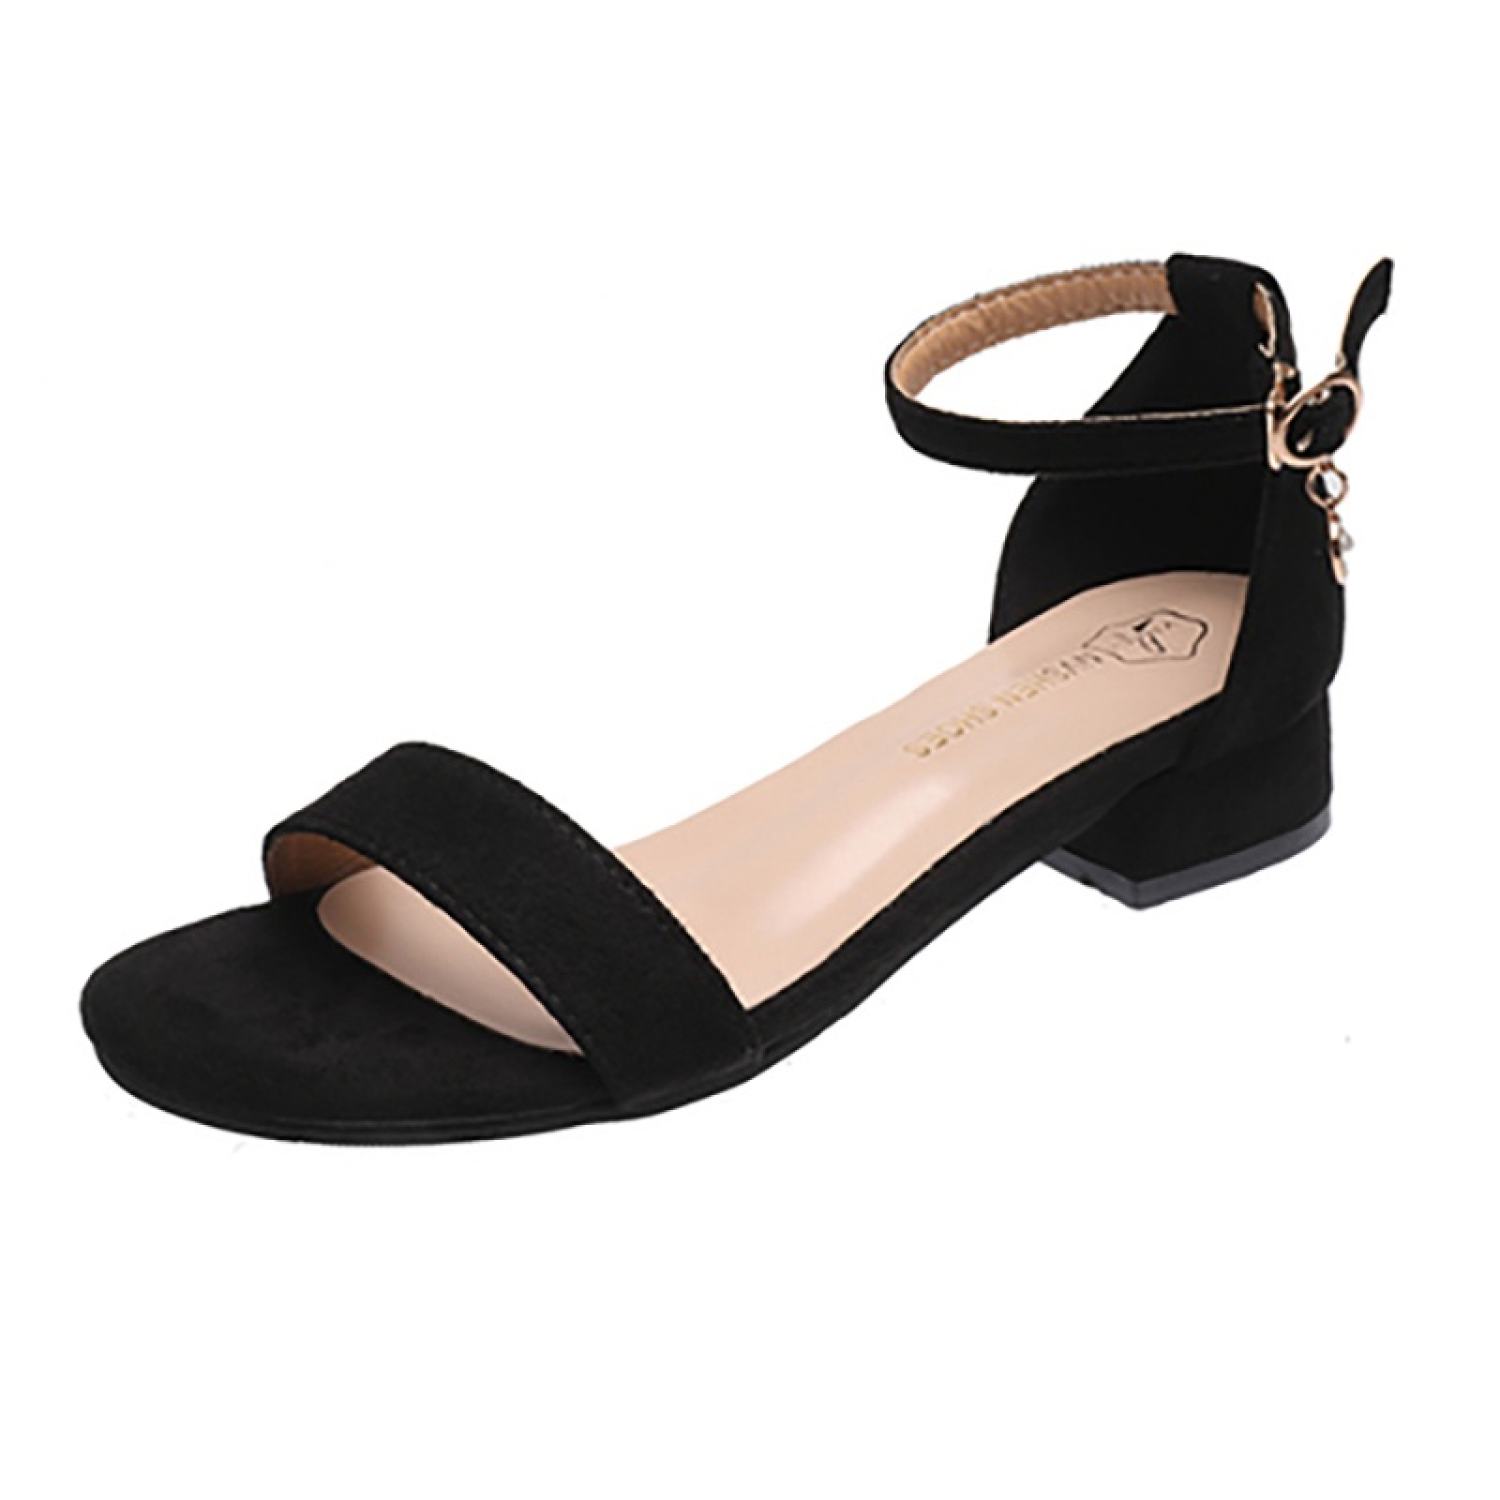 Sandal Cao Gót Big Size Nữ Quảng Châu G25 - Size 41 42, Màu Đen Kem